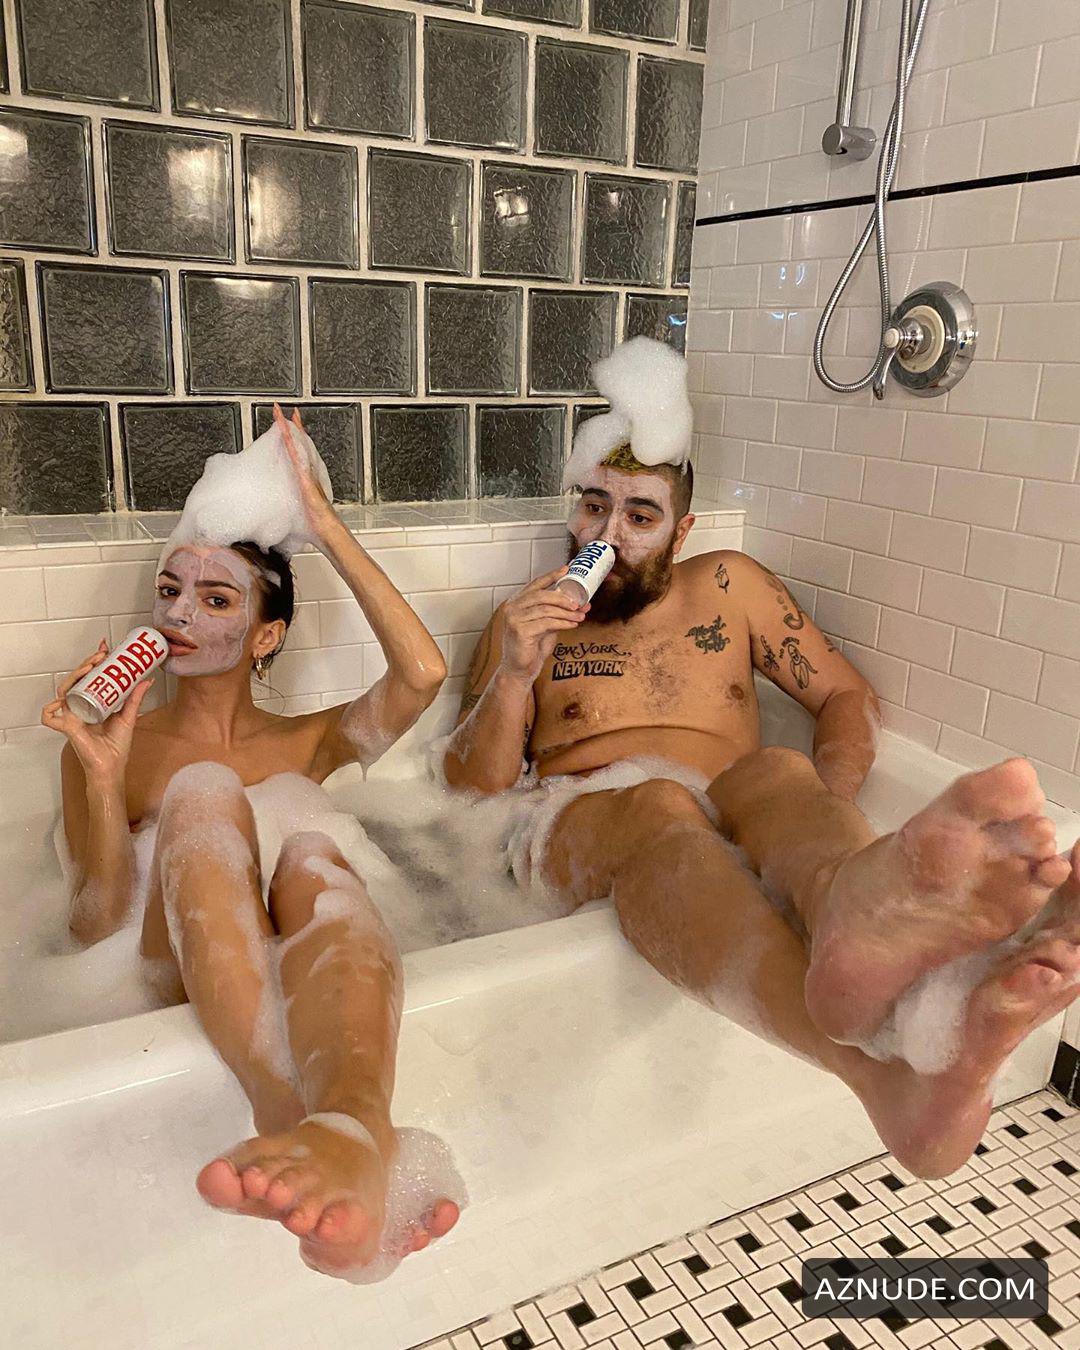 Emily Ratajkowski Nude Photos From Instagram In March Aznude